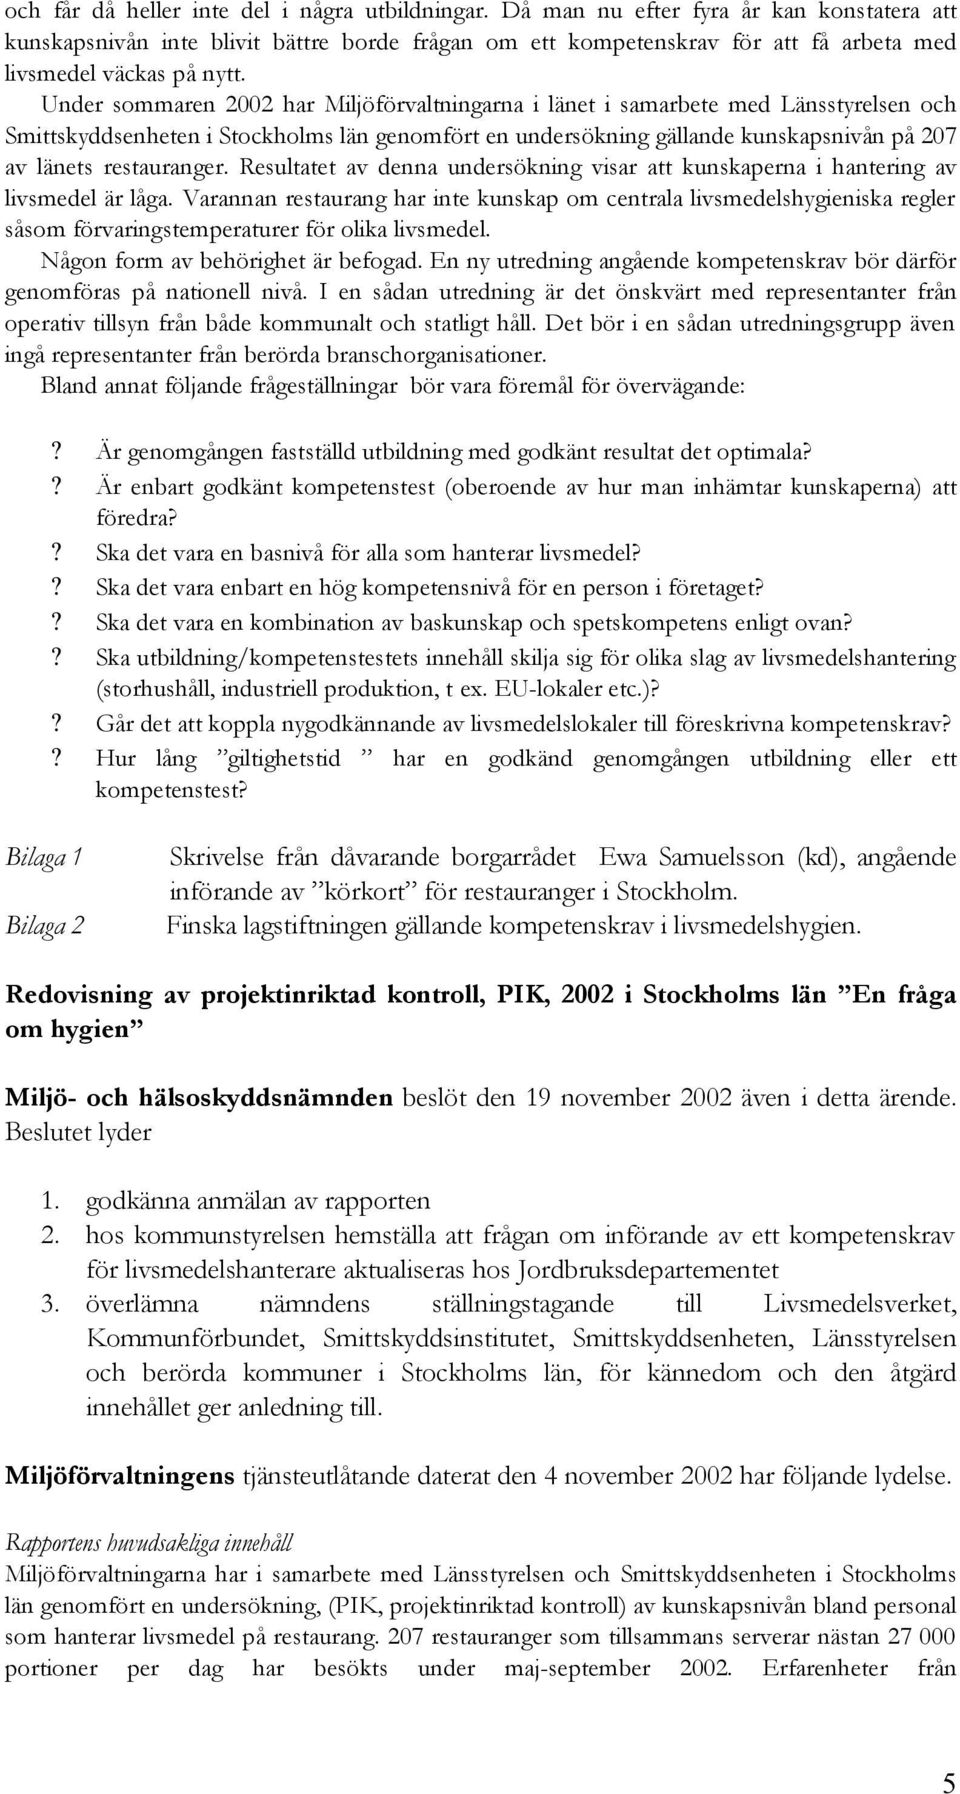 Under sommaren 2002 har Miljöförvaltningarna i länet i samarbete med Länsstyrelsen och Smittskyddsenheten i Stockholms län genomfört en undersökning gällande kunskapsnivån på 207 av länets